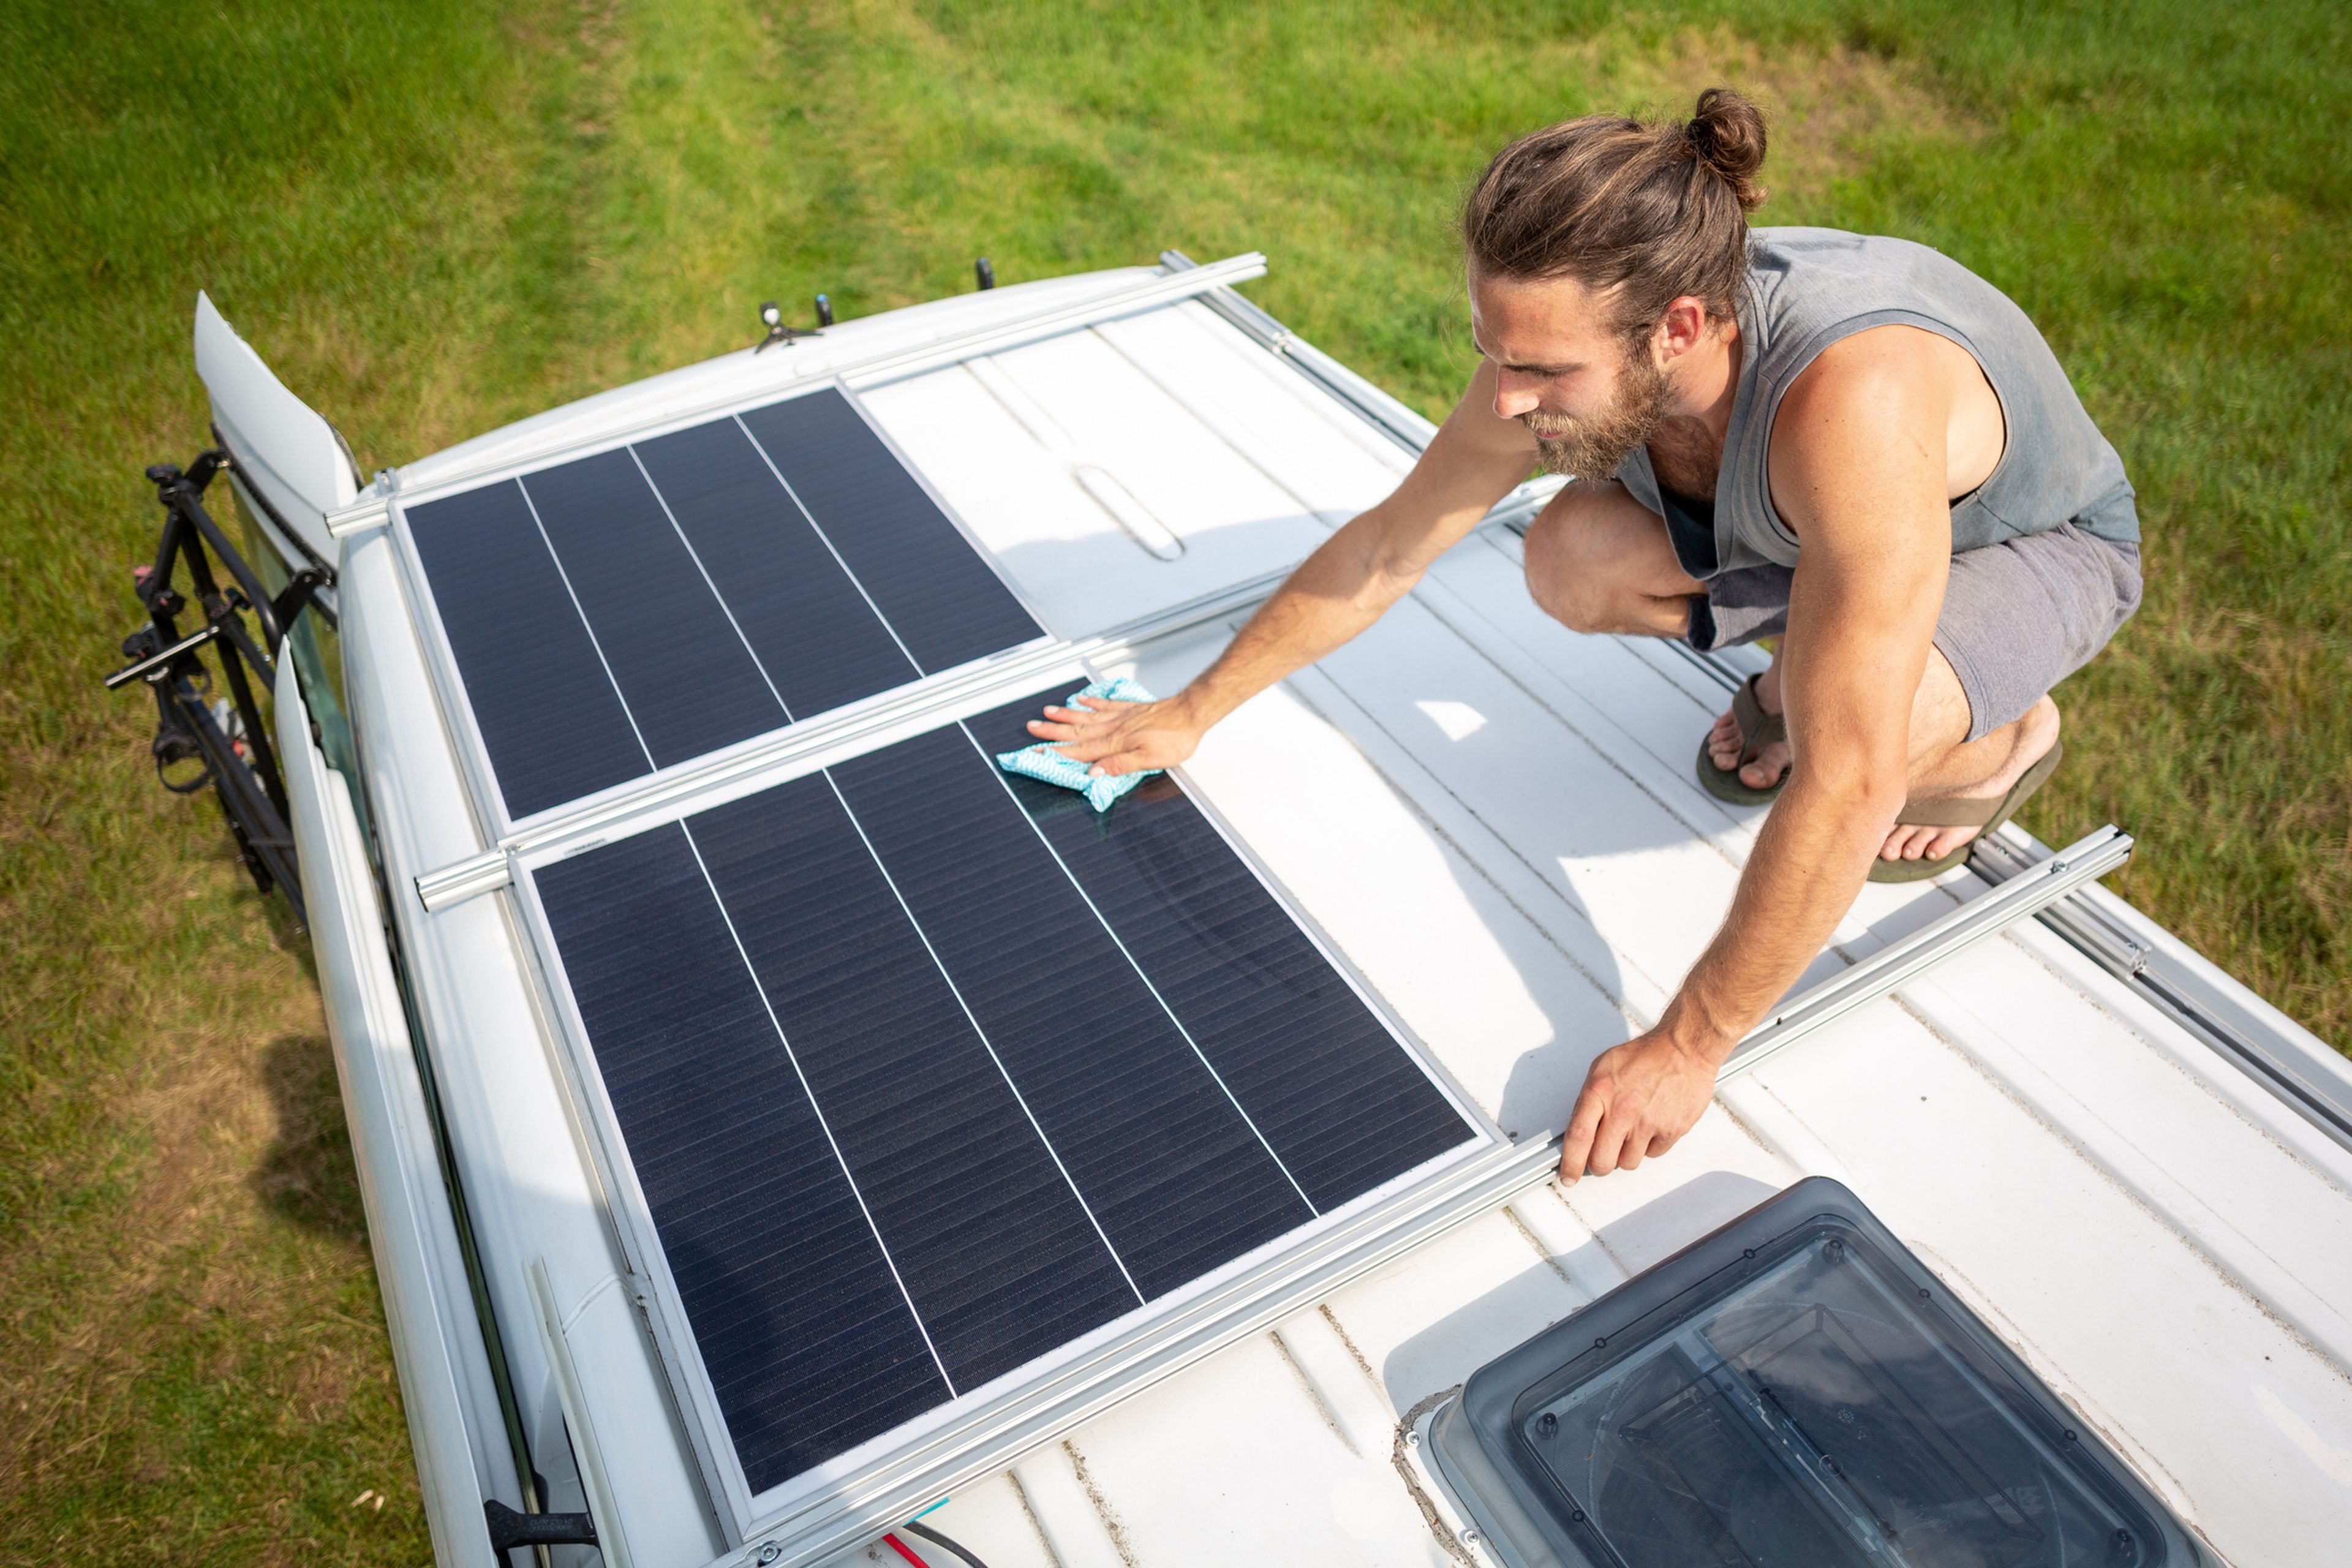 Un chico limpia las placas solares que lleva en el techo de la furgoneta.